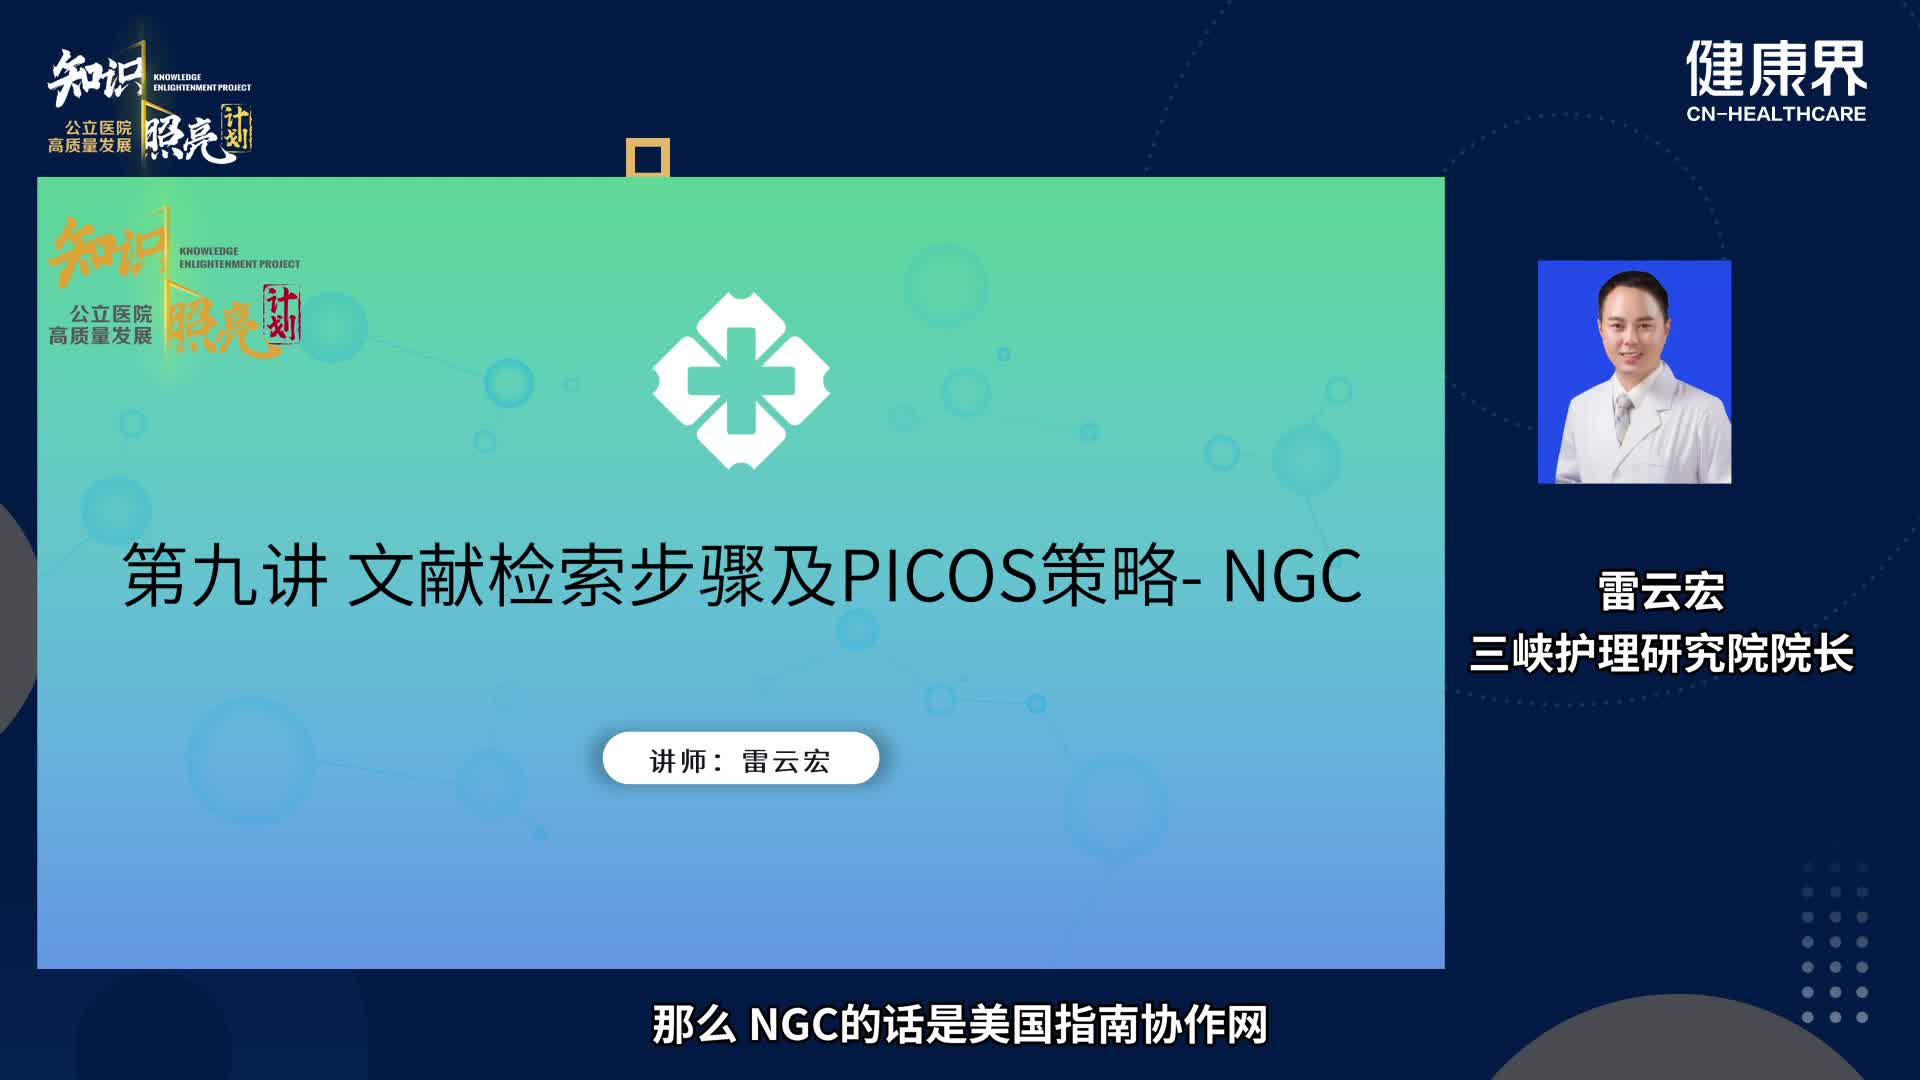 文献检索步骤及PICOS策略- NGC